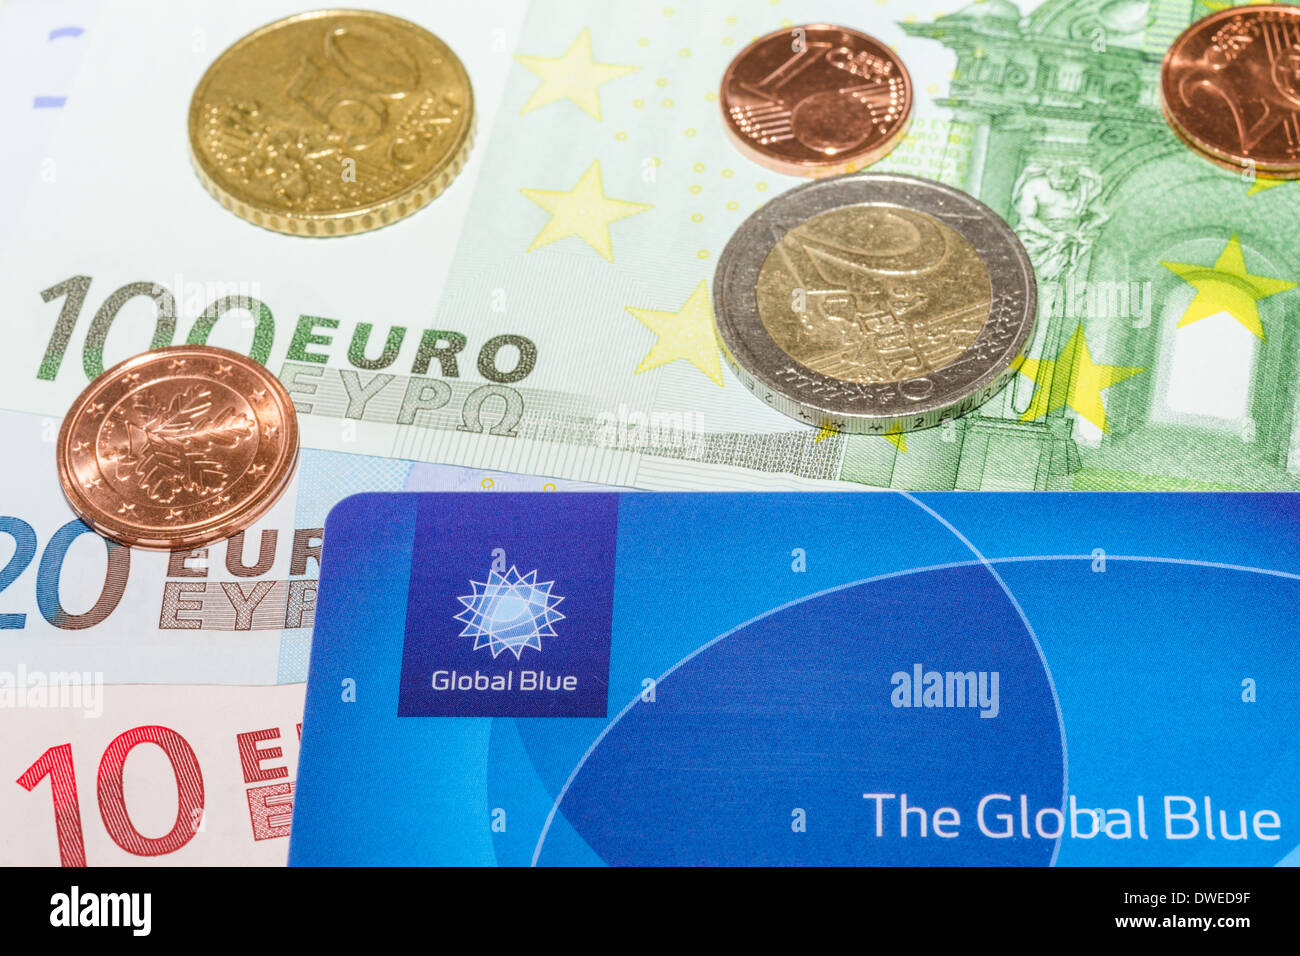 München, Deutschland - 23. Februar 2014: Europäische Euro Banknoten-Cent-Münzen und Global Blue card Stockfoto